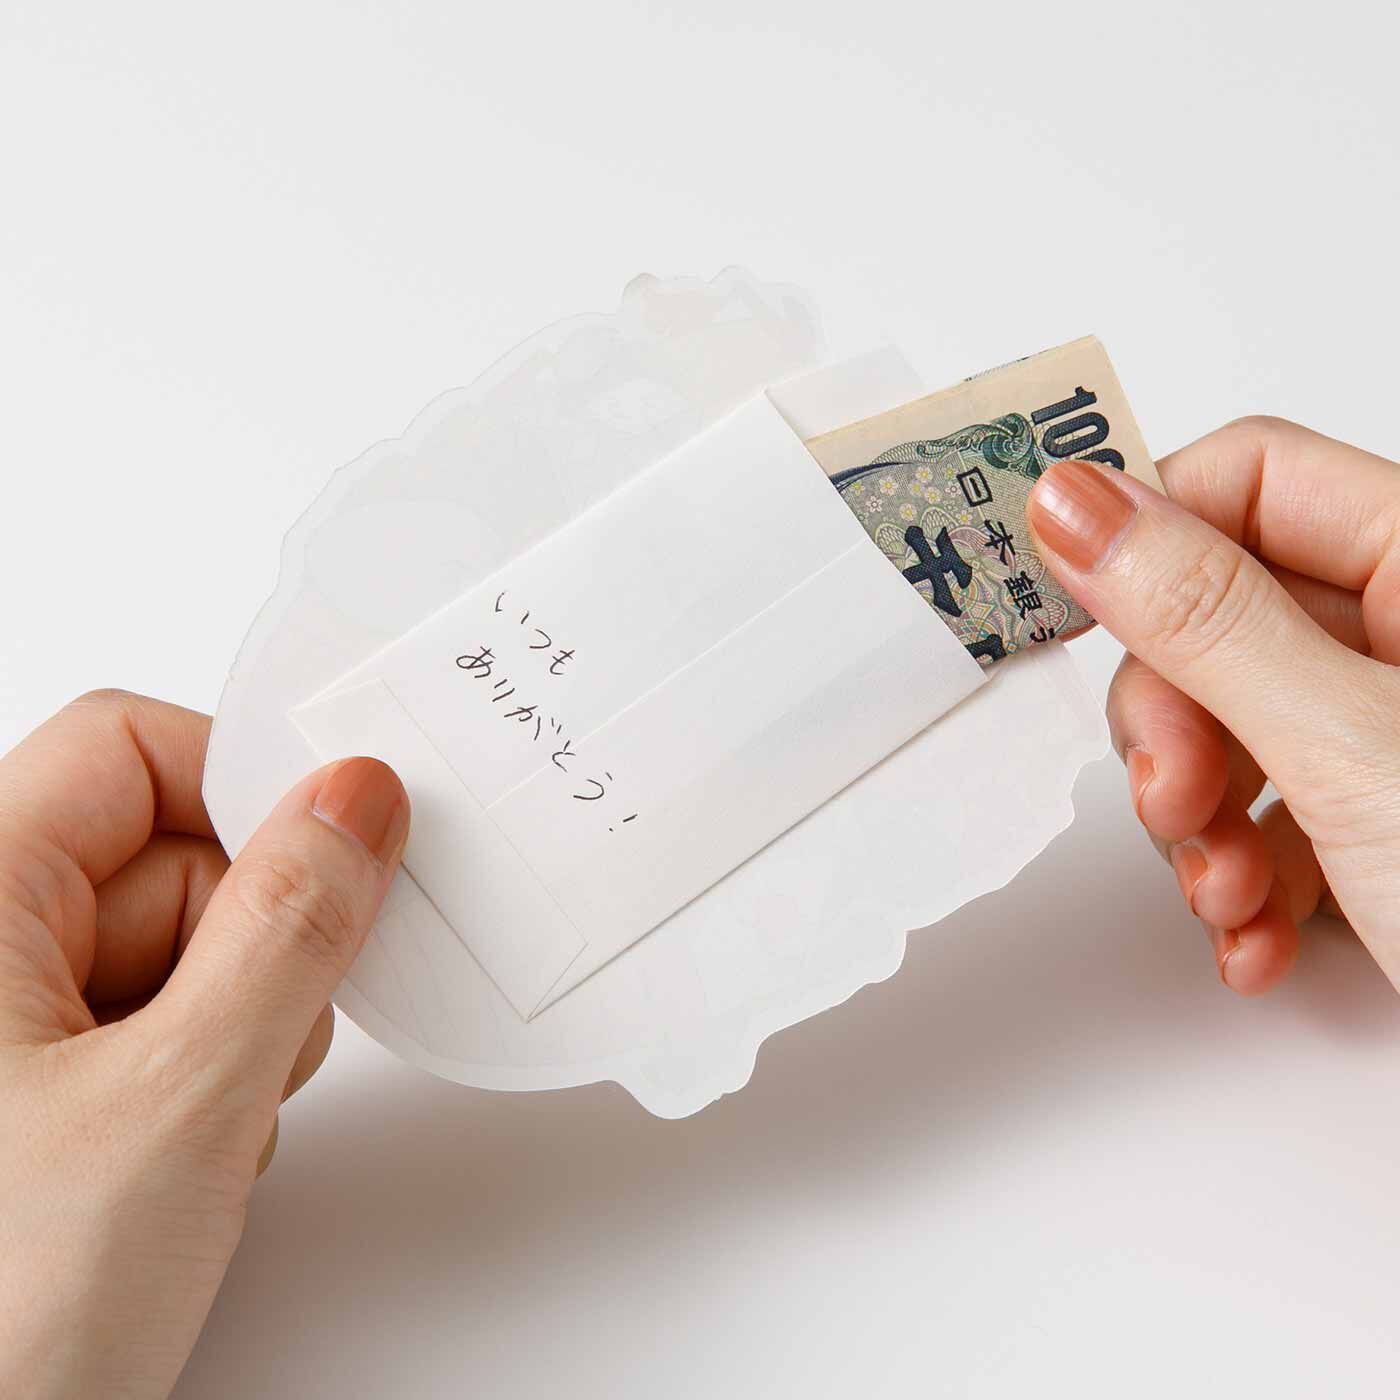 猫部|日本画家 久保智昭さんとつくった 七福にゃんこの宝船ポチ袋セット|四つ折りにしたお札が入るサイズです。メッセージを添えて贈りたい。